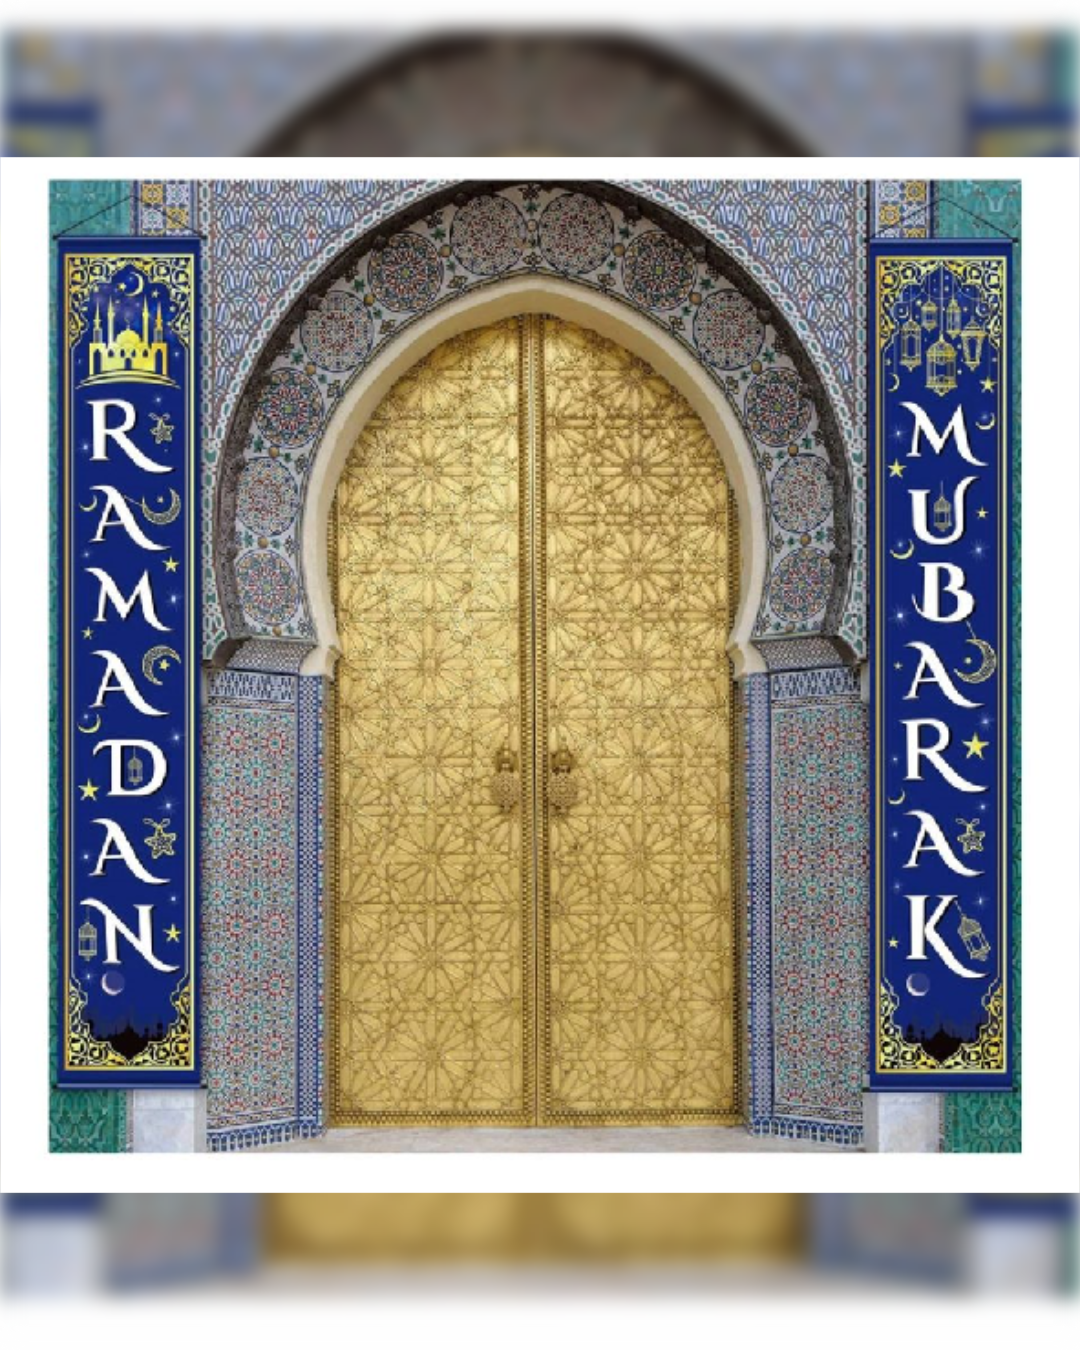 Ramadan Hanging Banners' Set for Indoor/Outdoor decorations لافتات رمضان الجميلة و القابلة للتعليق داخل أو خارج المنزل